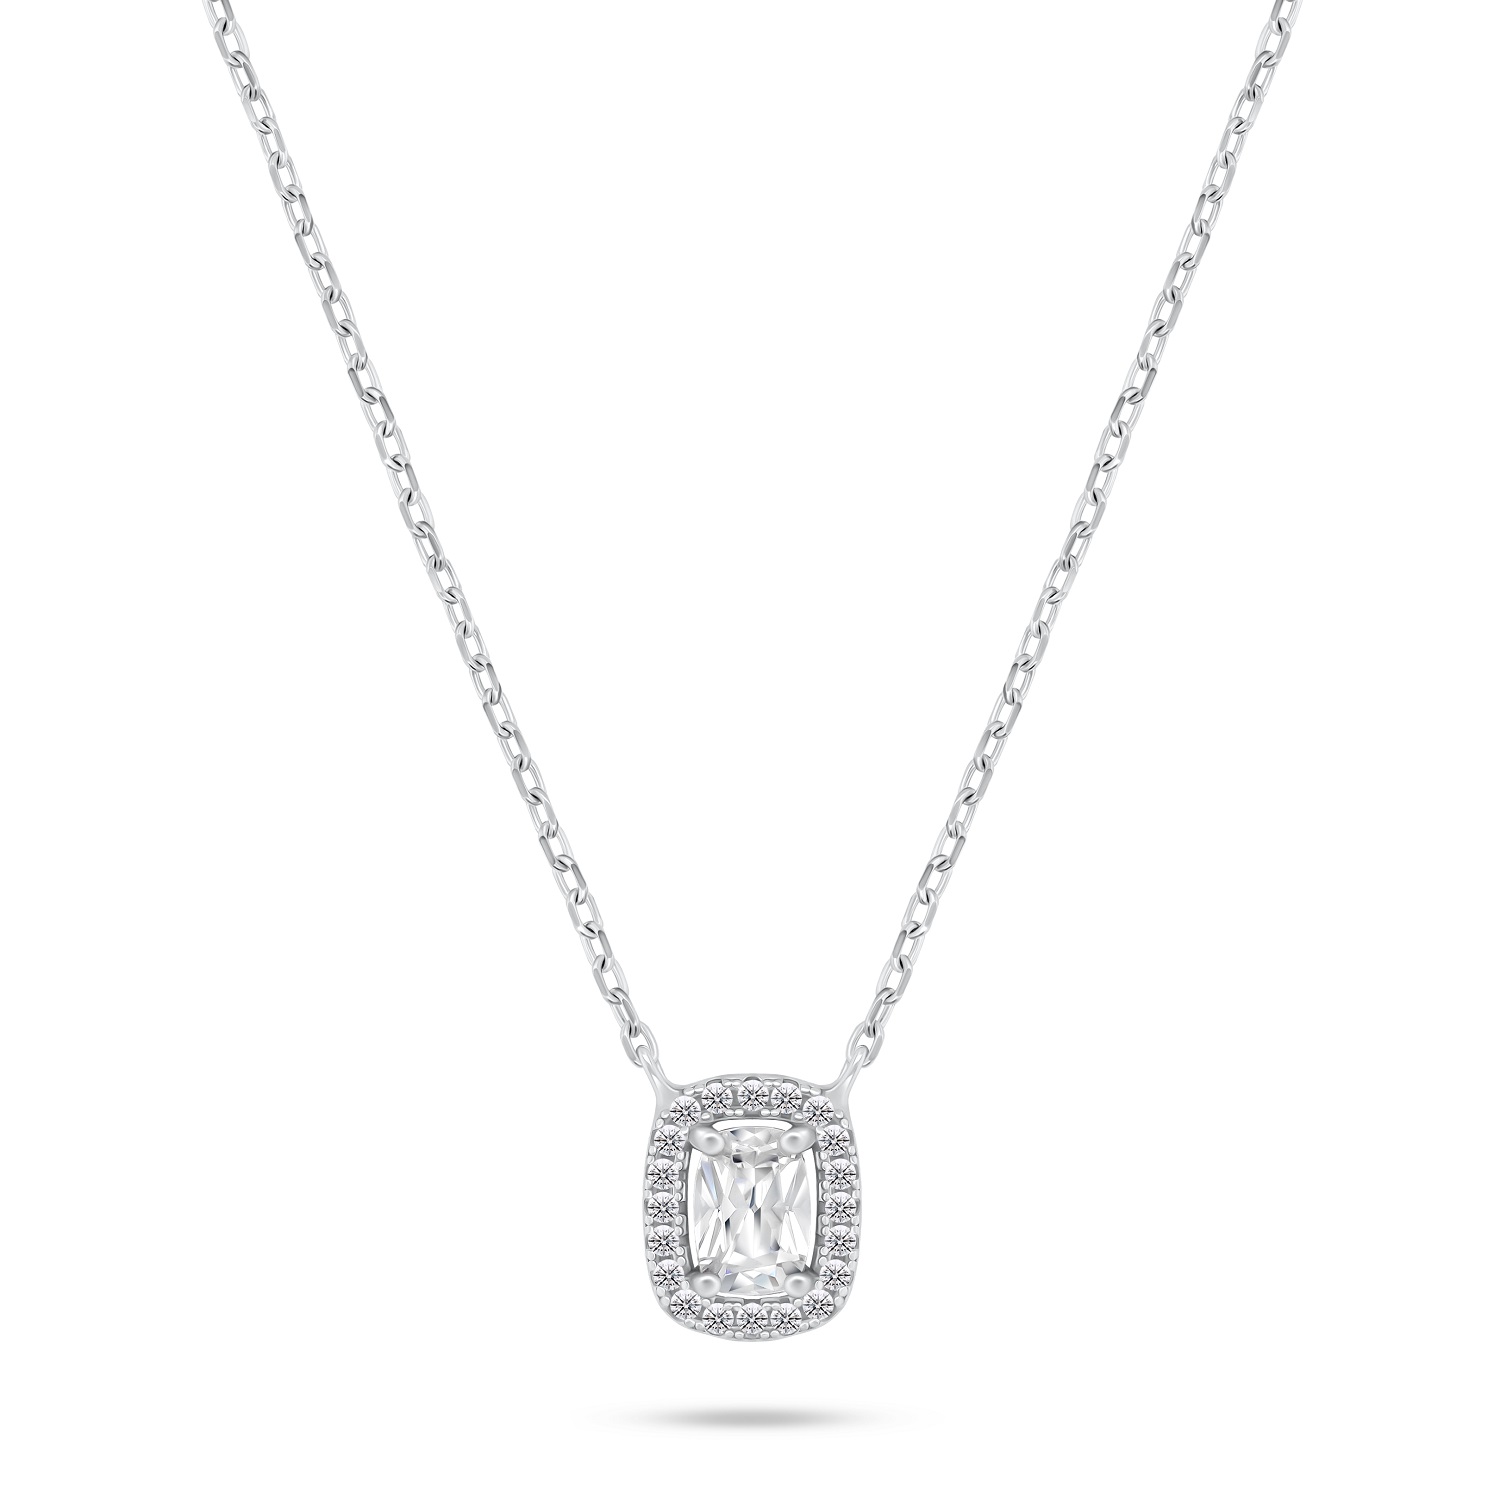 Brilio Silver Nádherný strieborný náhrdelník so zirkónmi NCL127W